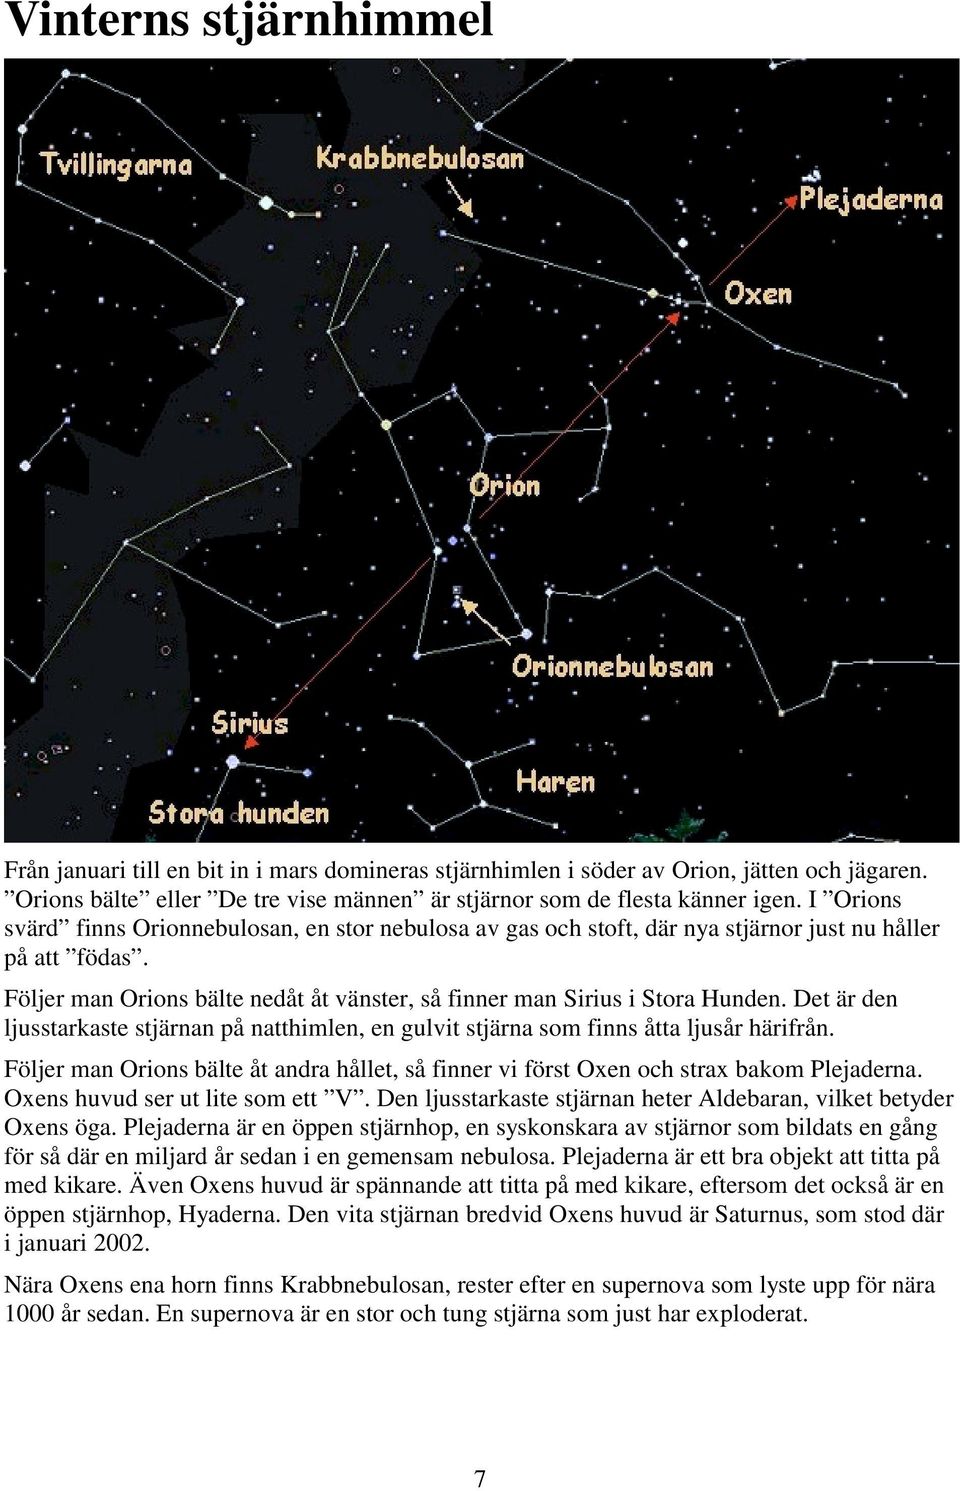 Det är den ljusstarkaste stjärnan på natthimlen, en gulvit stjärna som finns åtta ljusår härifrån. Följer man Orions bälte åt andra hållet, så finner vi först Oxen och strax bakom Plejaderna.